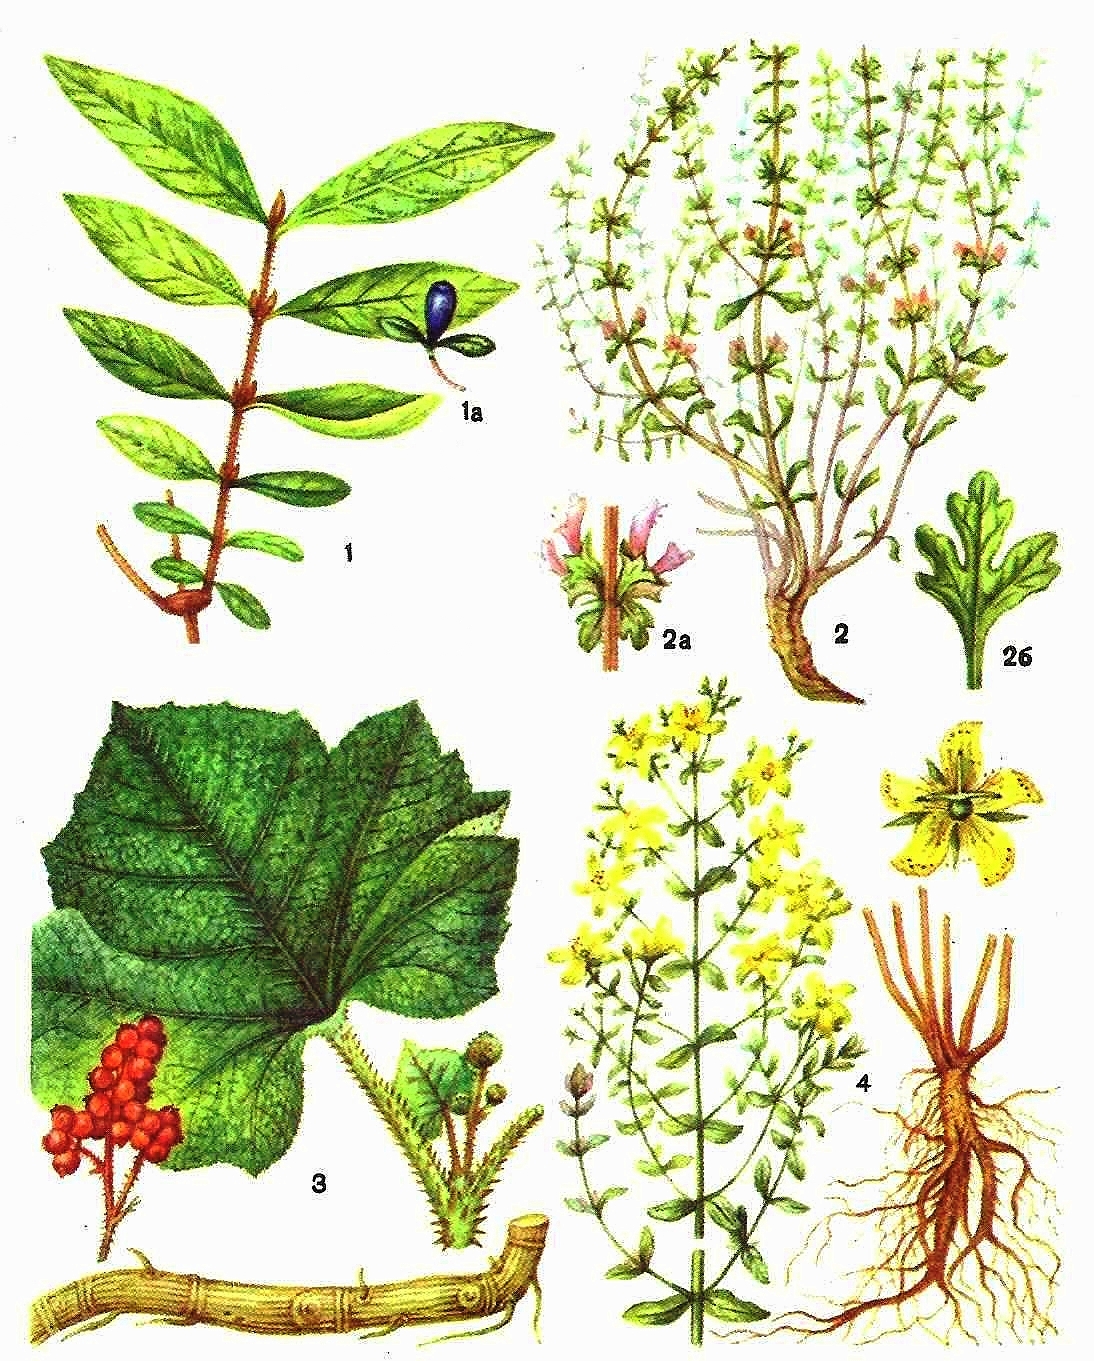 1 - жимолость съедобная (а - плод); 2 - зайцегуб опьяняющий (а - цветки, б - лист); 3 - заманиха высокая; 4 - зверобой продырявленный